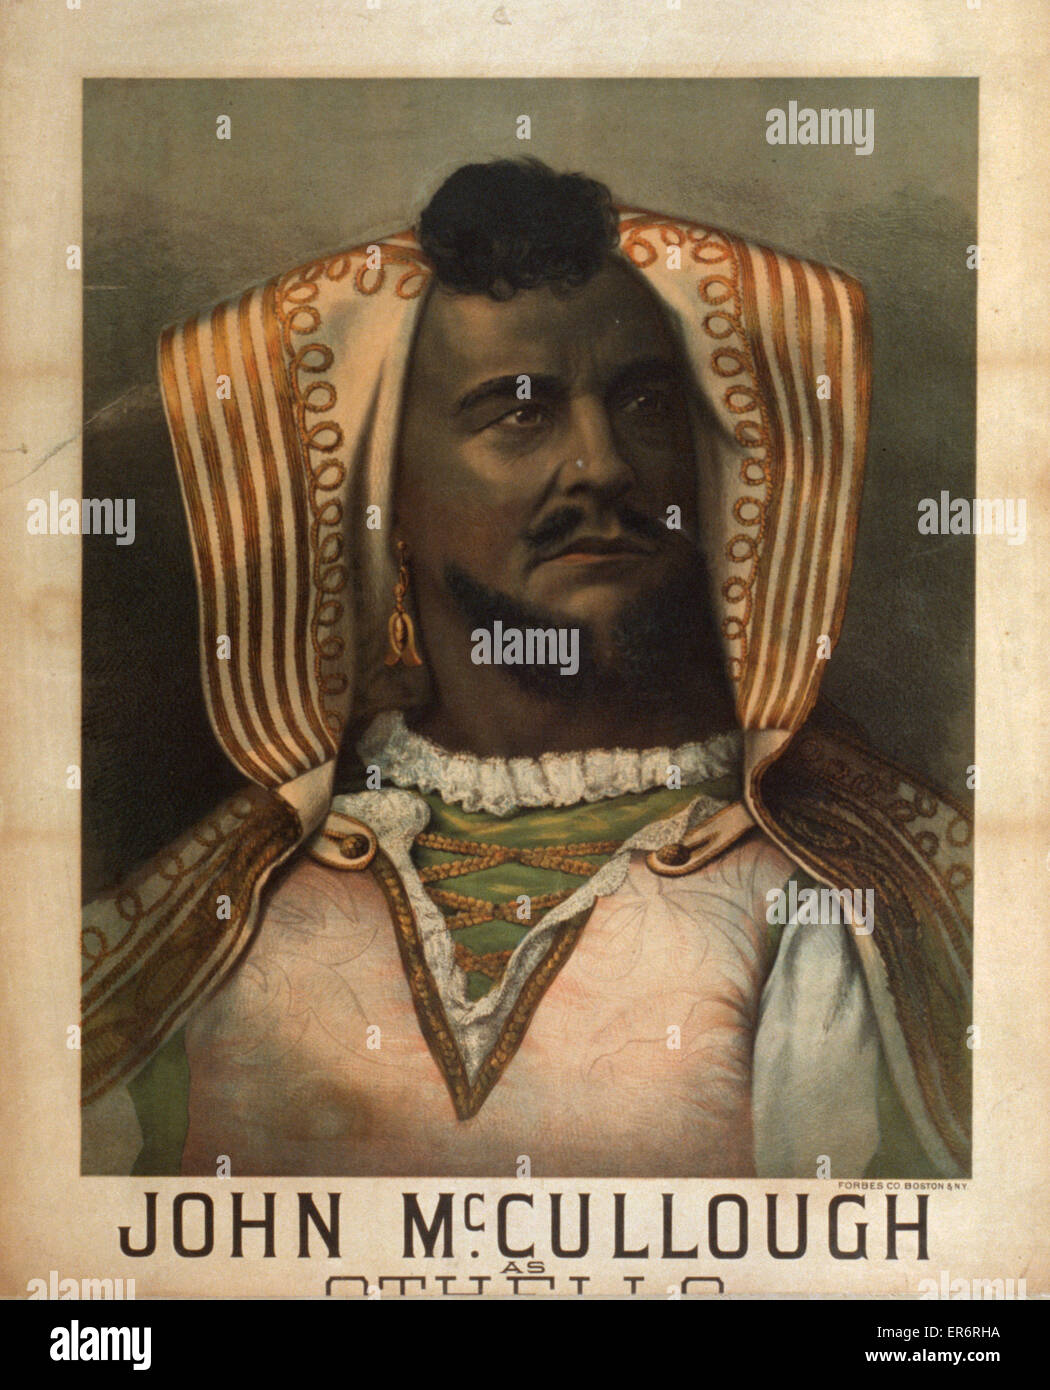 John McCullough as Othello Stock Photo